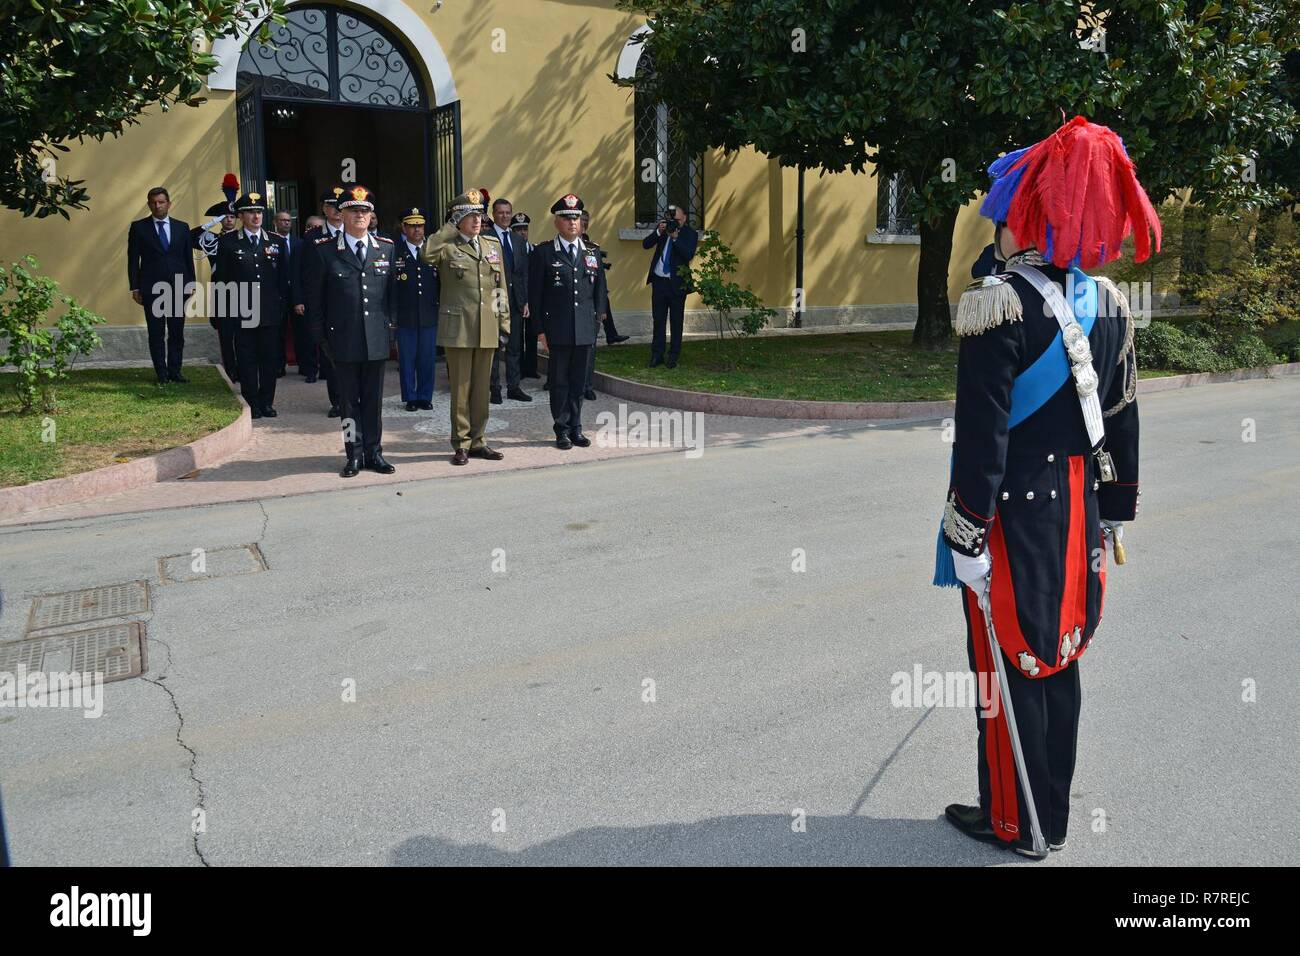 Le Carabinier italien commandant de la formation Ecole des Sous Officiers de Florence, de rendre honneur à la fin de la visite de Son Altesse Royale, le Prince Charles, prince de Galles, pendant une visite au Centre d'excellence pour les unités de police de stabilité (COESPU) Vicenza, Italie, le 1 avril 2017. Banque D'Images